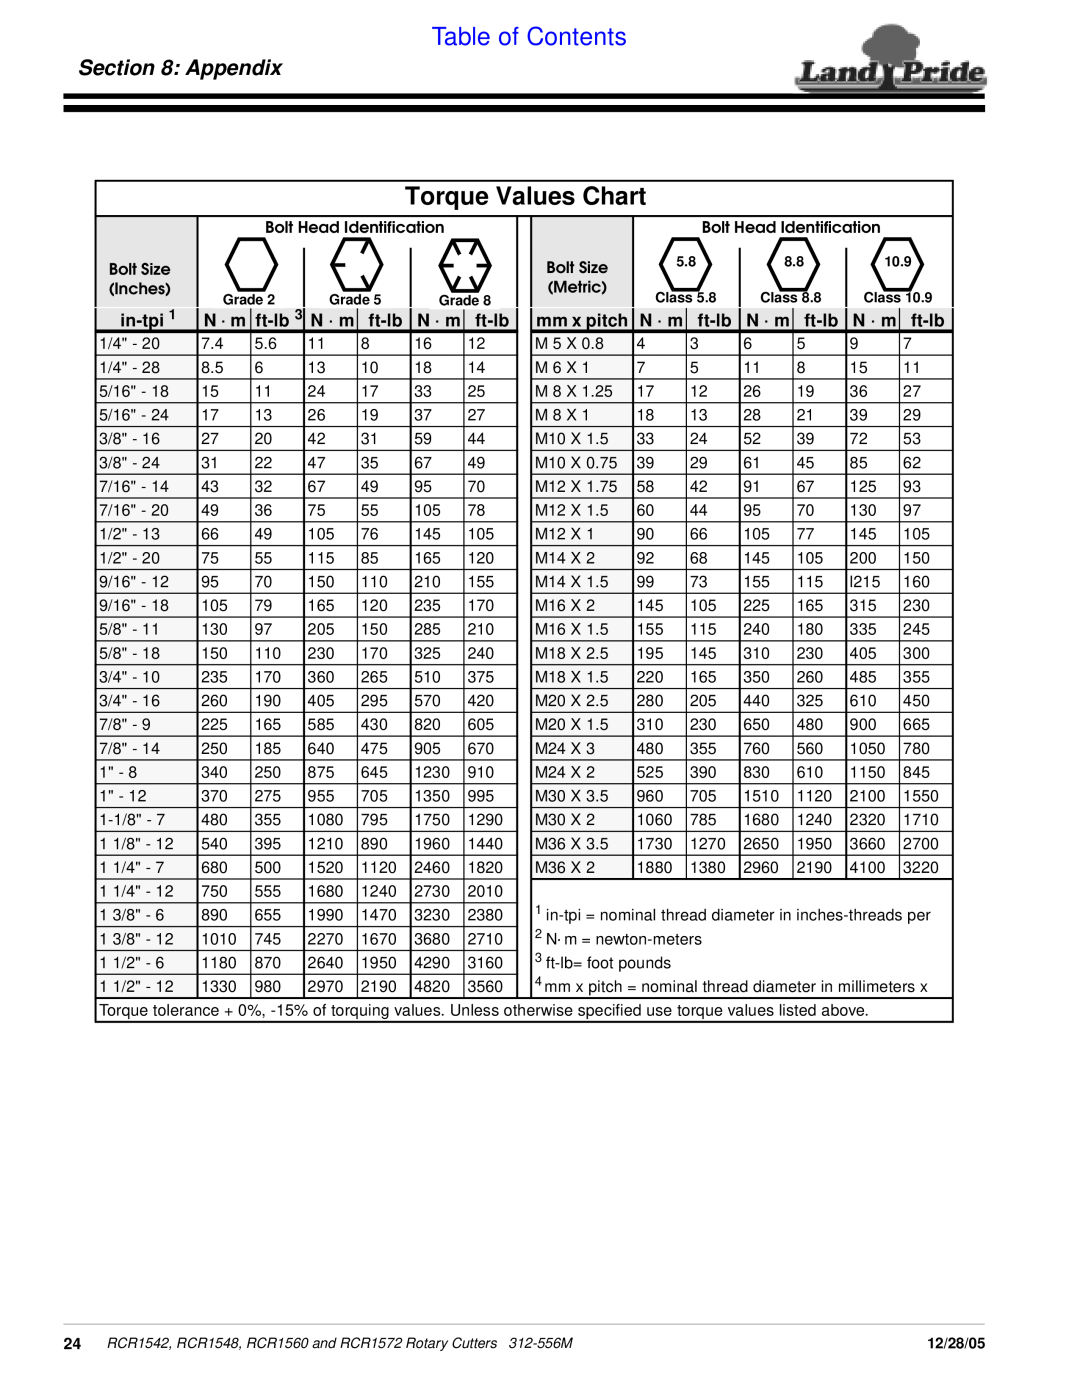 Land Pride RCR1542, RCR1560, RCR1572 Torque Values Chart, Appendix, in-tpi, ft-lb, N · m, mm x pitch, Table of Contents 